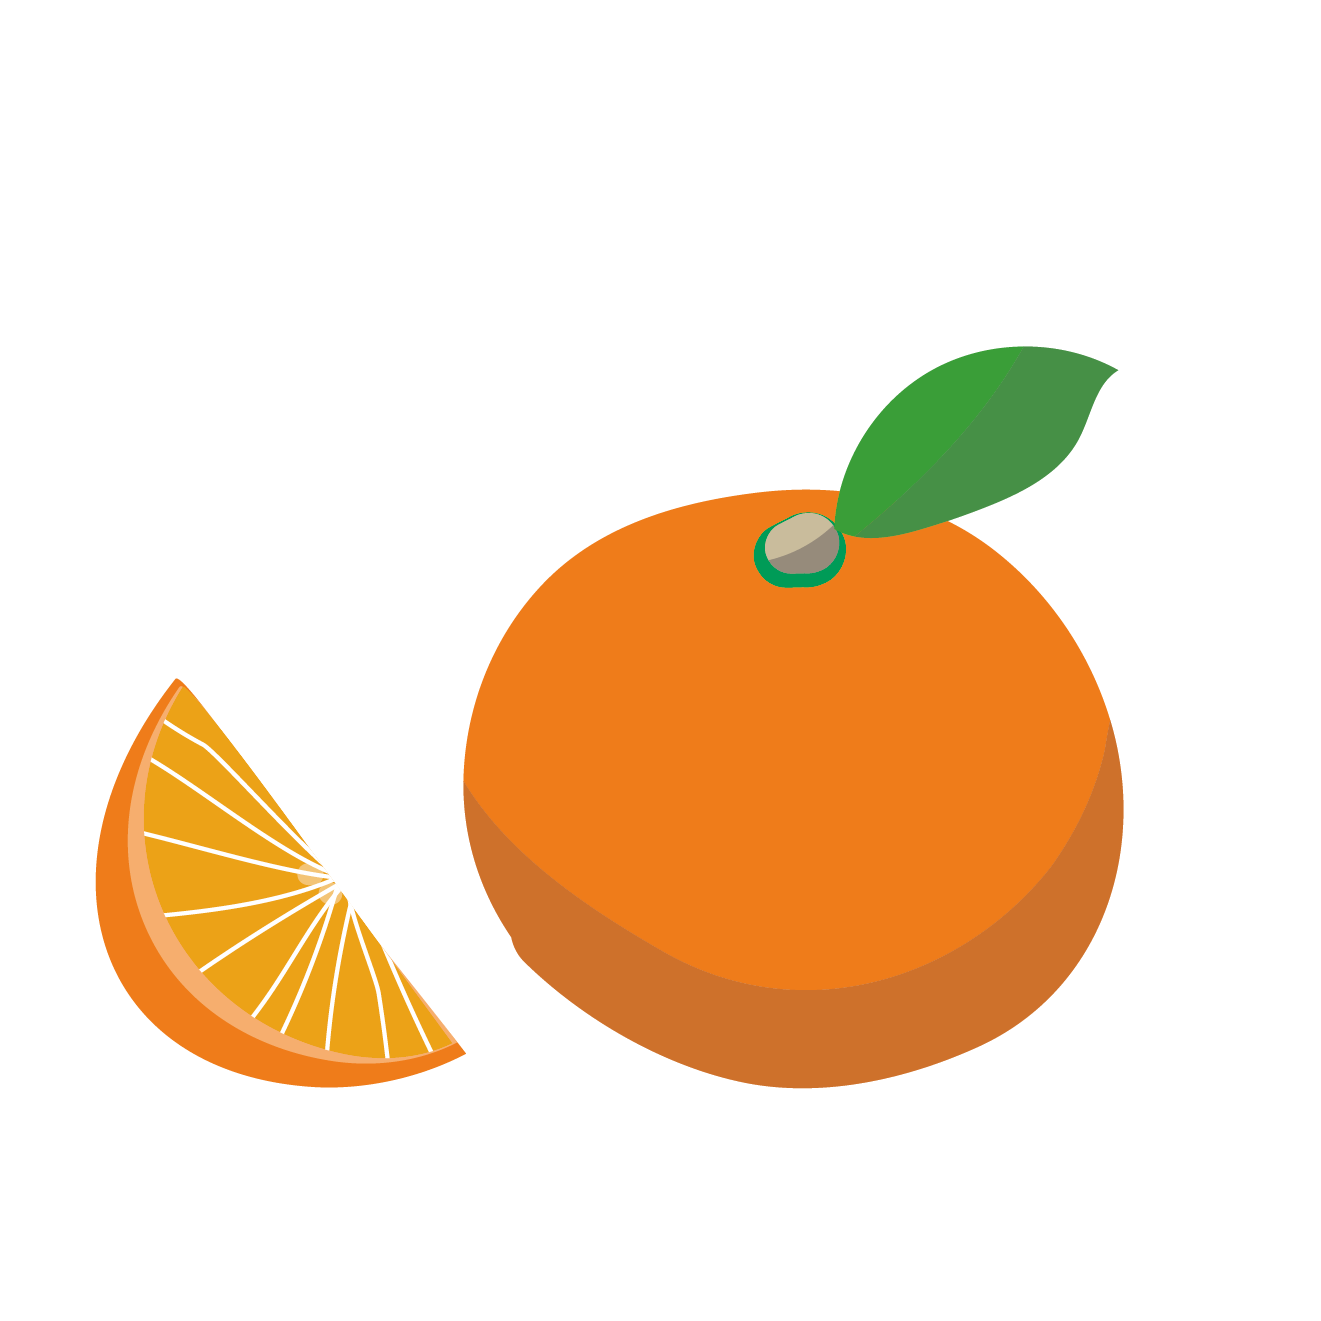 オレンジ おれんじ のイラスト 柑橘類 商用フリー 無料 の